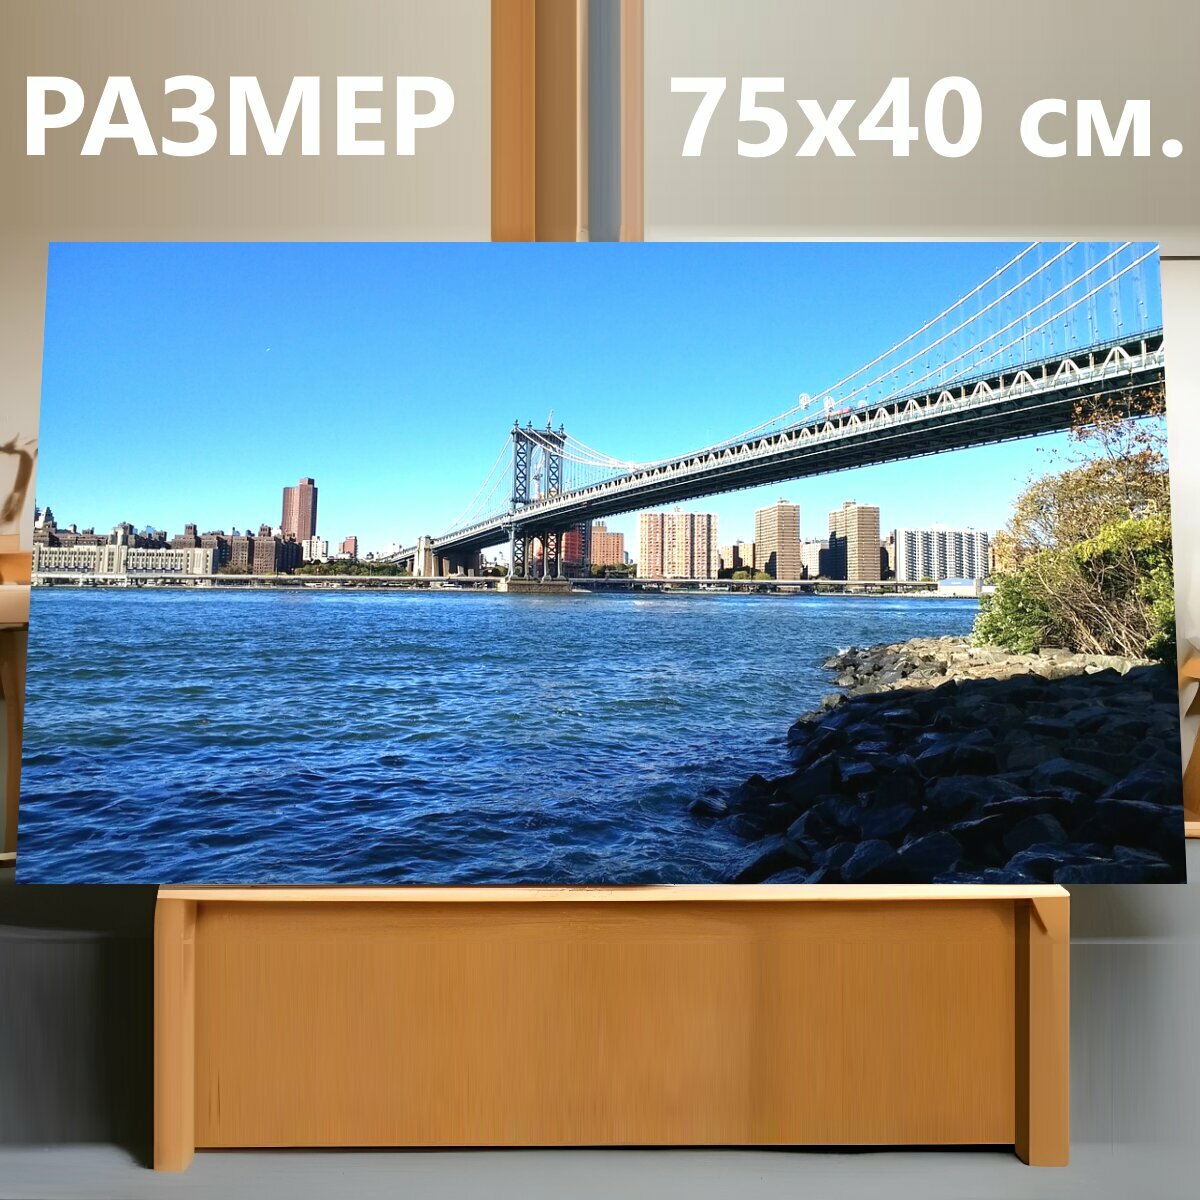 Картина на холсте "Бруклинский мост, ист ривер, линия горизонта" на подрамнике 75х40 см. для интерьера